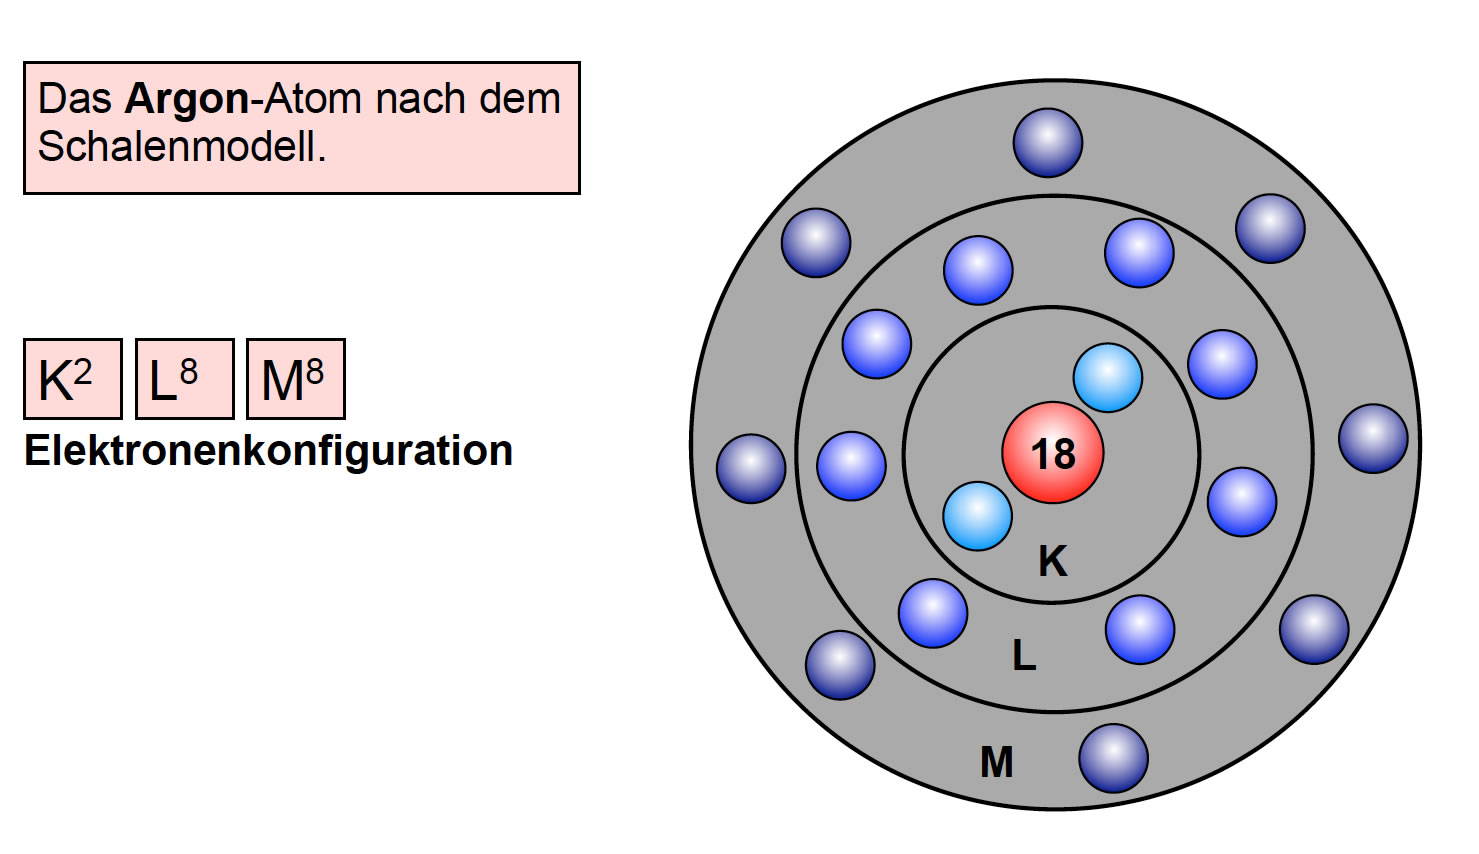 Das Argon-Atom im Schalenmodell